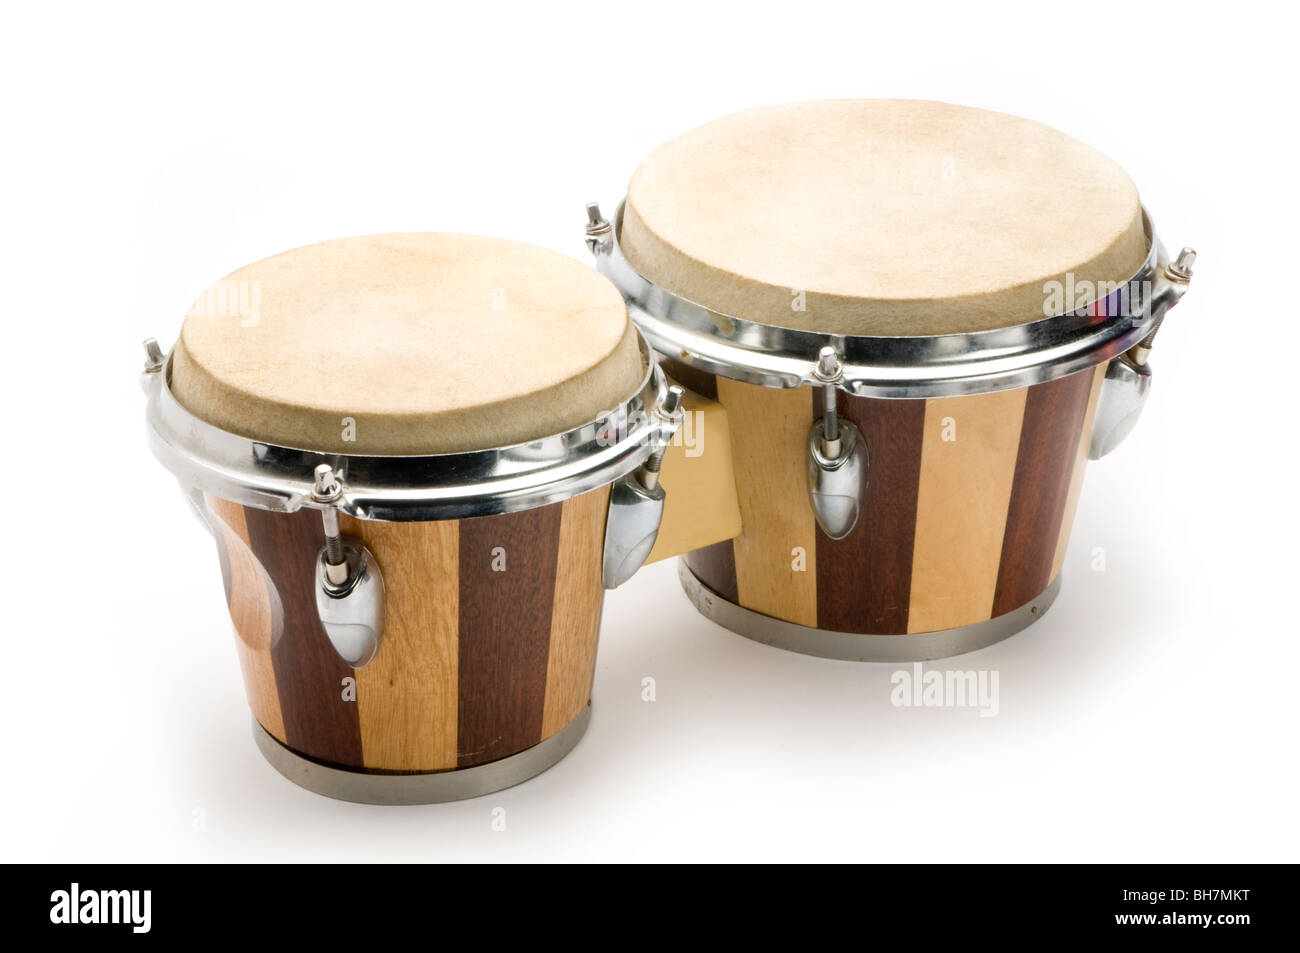 tambores del Bongo Foto de stock